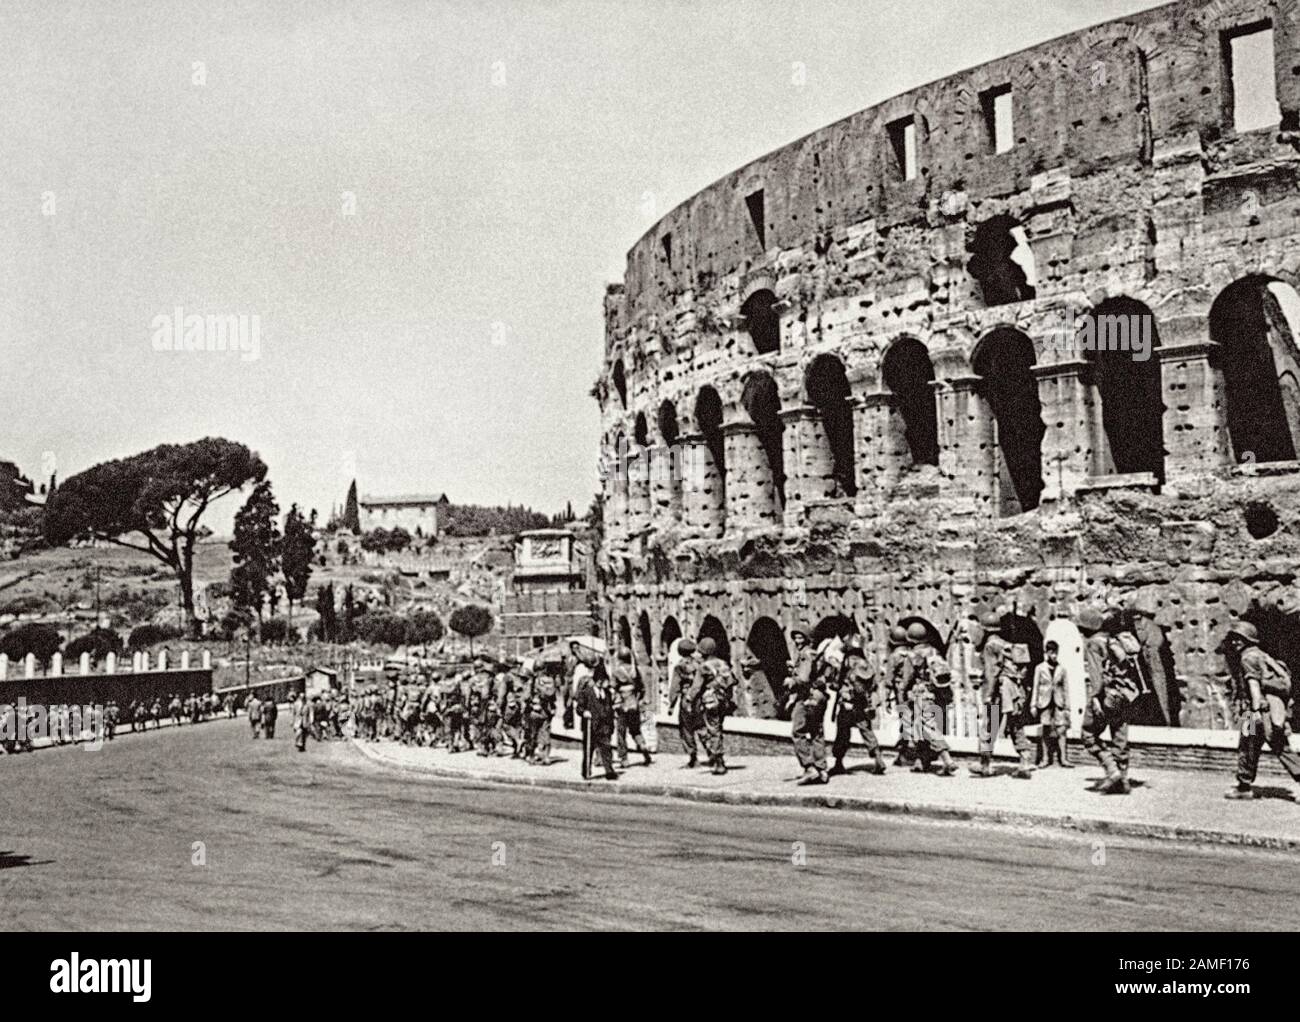 Les soldats américains sont sur la route qui passe devant le Colisée romain après leur entrée à Rome, poursuivant le traitement de la Wehrmacht nazie. Rome. Italie, juin 1944. Banque D'Images